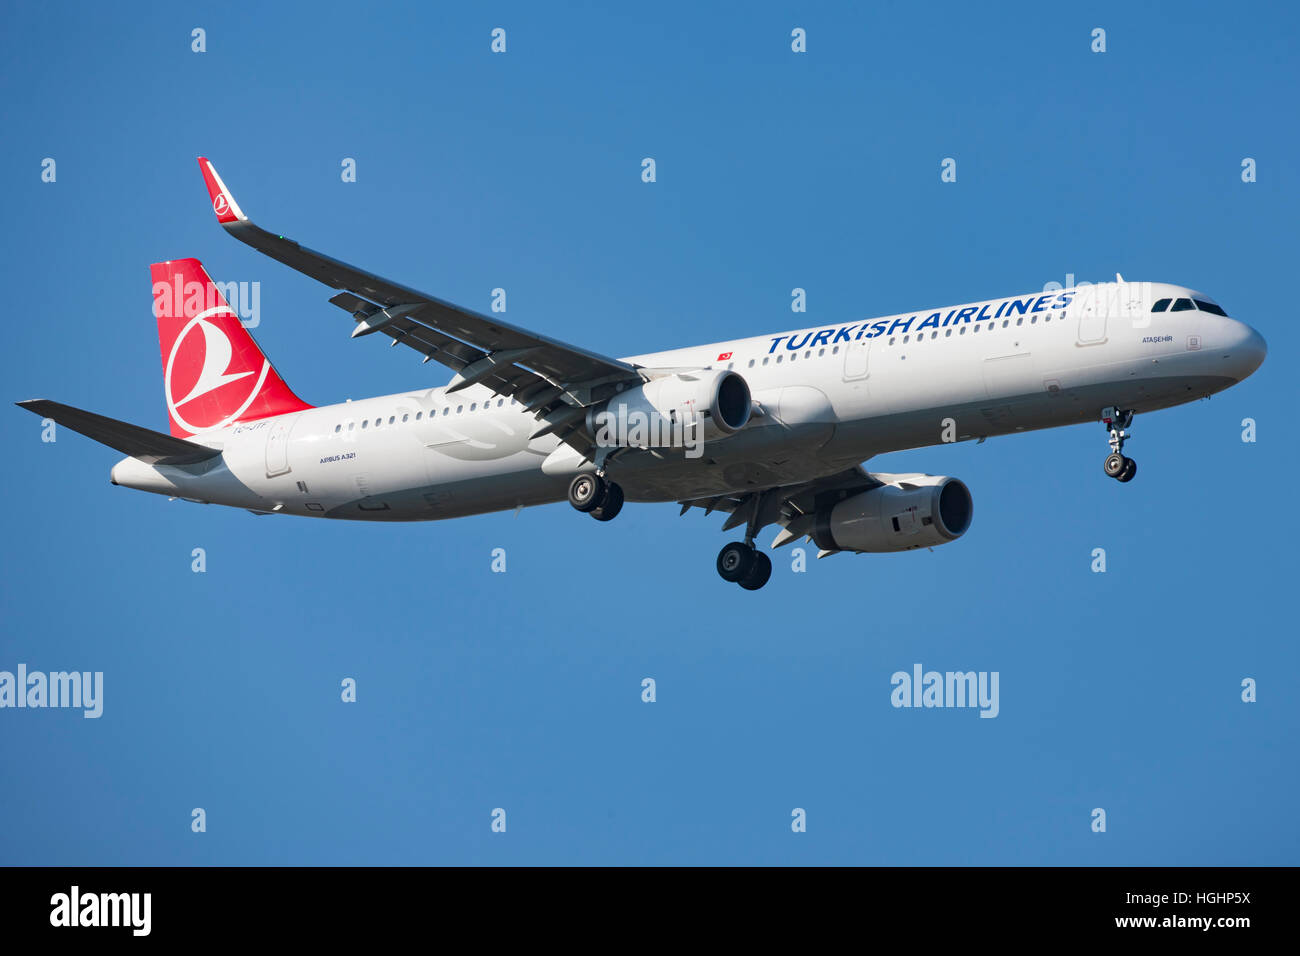 Turkish Airline landing in Copenhagen Stock Photo